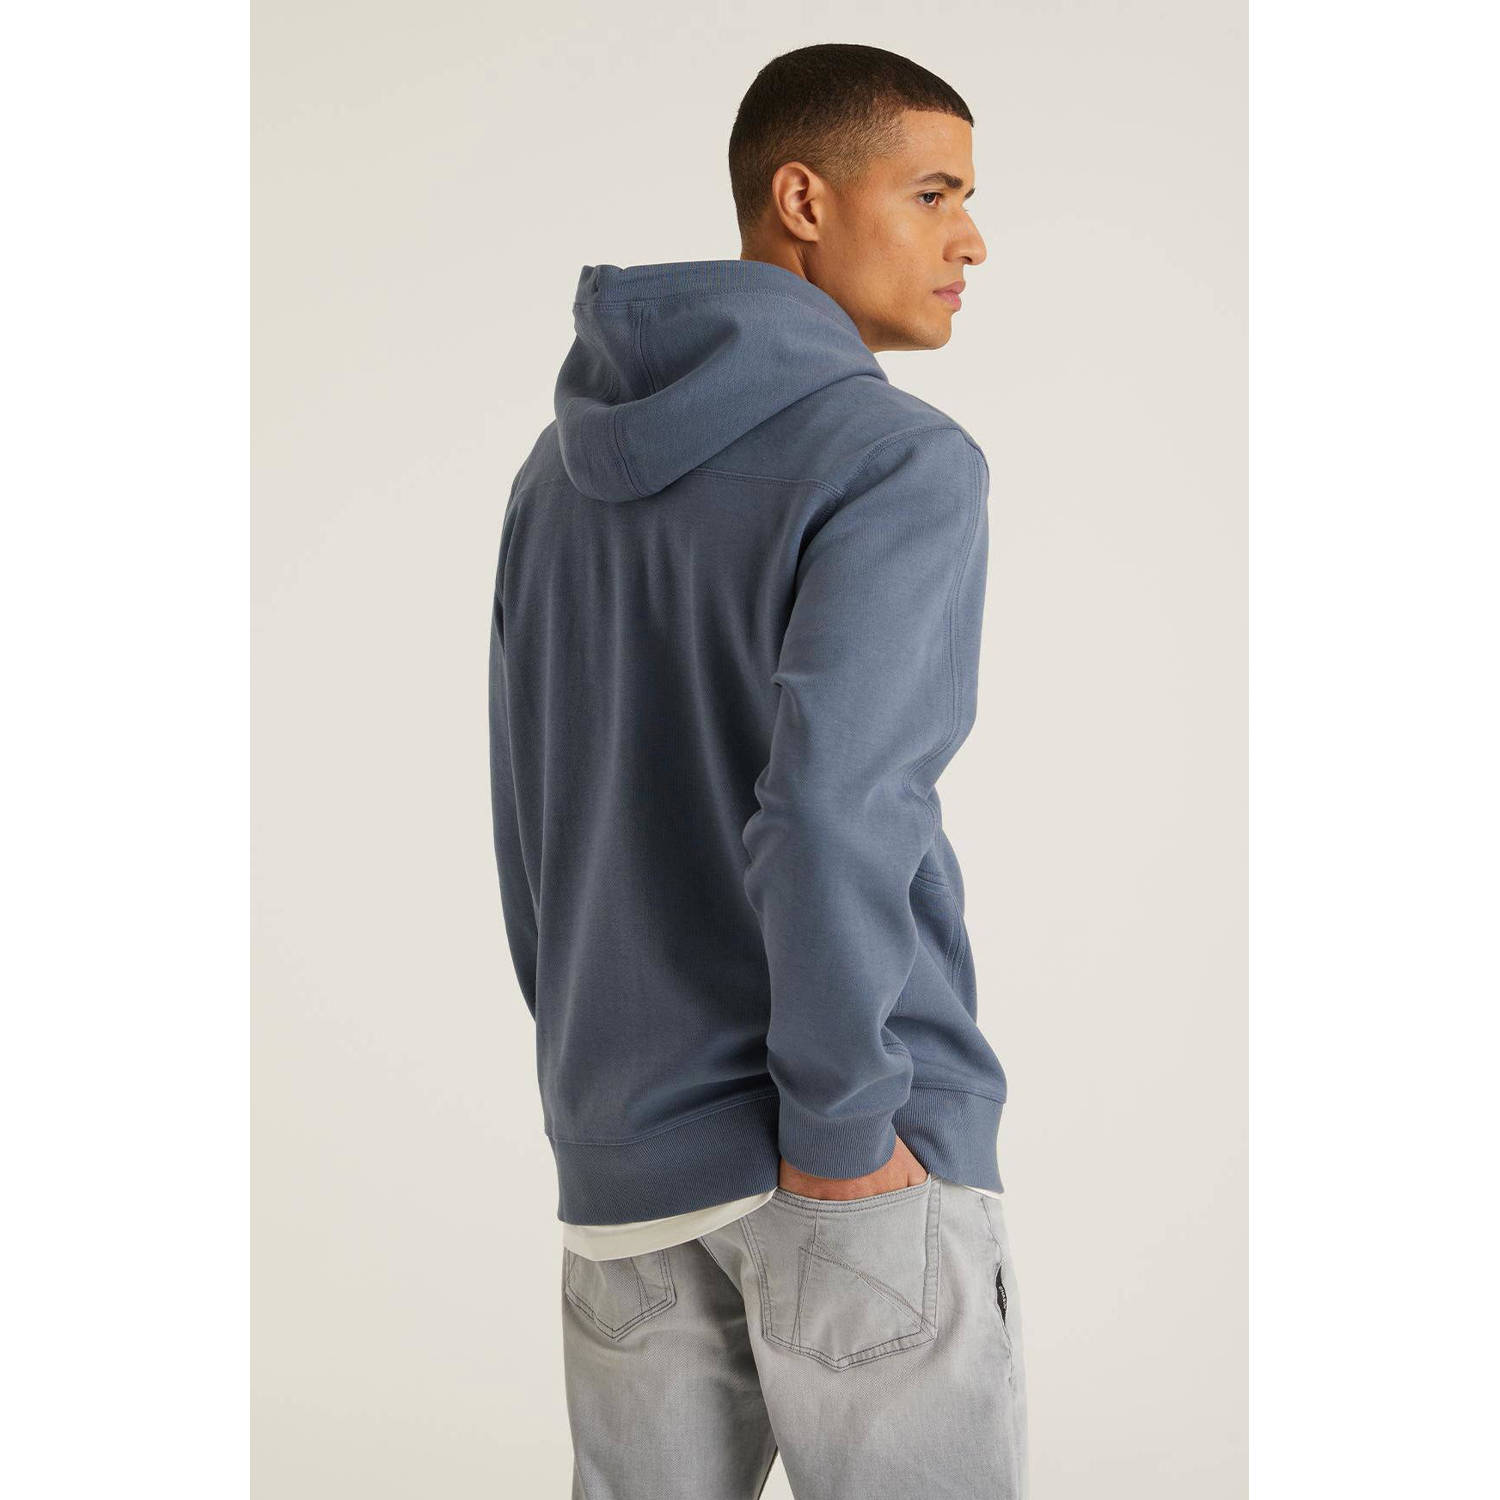 CHASIN' hoodie HARPER met logo medium blue